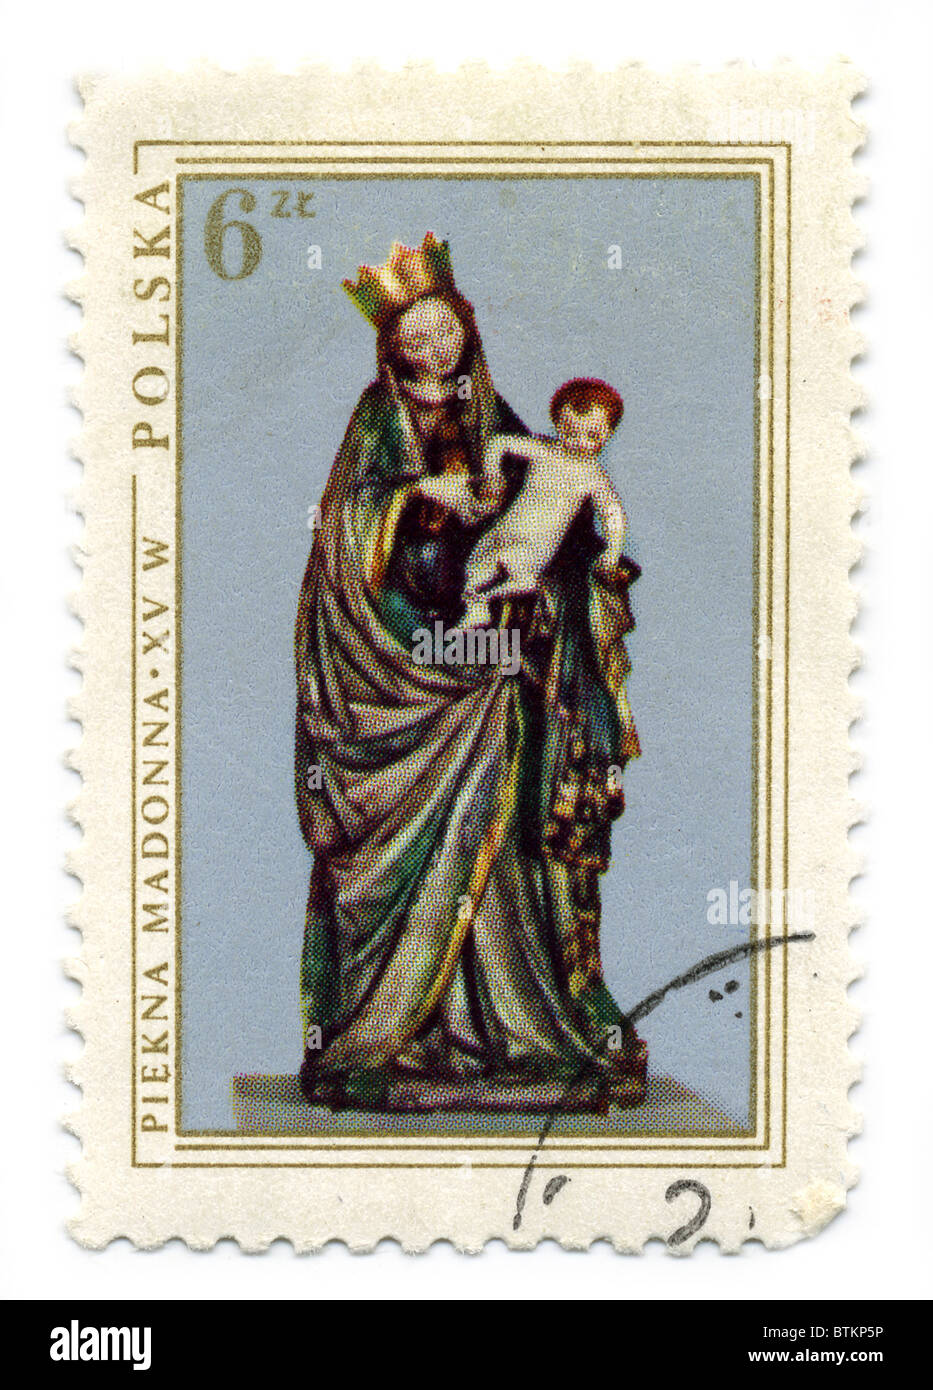 Polen - CIRCA 1976: Eine Briefmarke gedruckt in Polen zeigt die schöne Madonna, Skulptur, 1410 alt, ca. 1976. Stockfoto